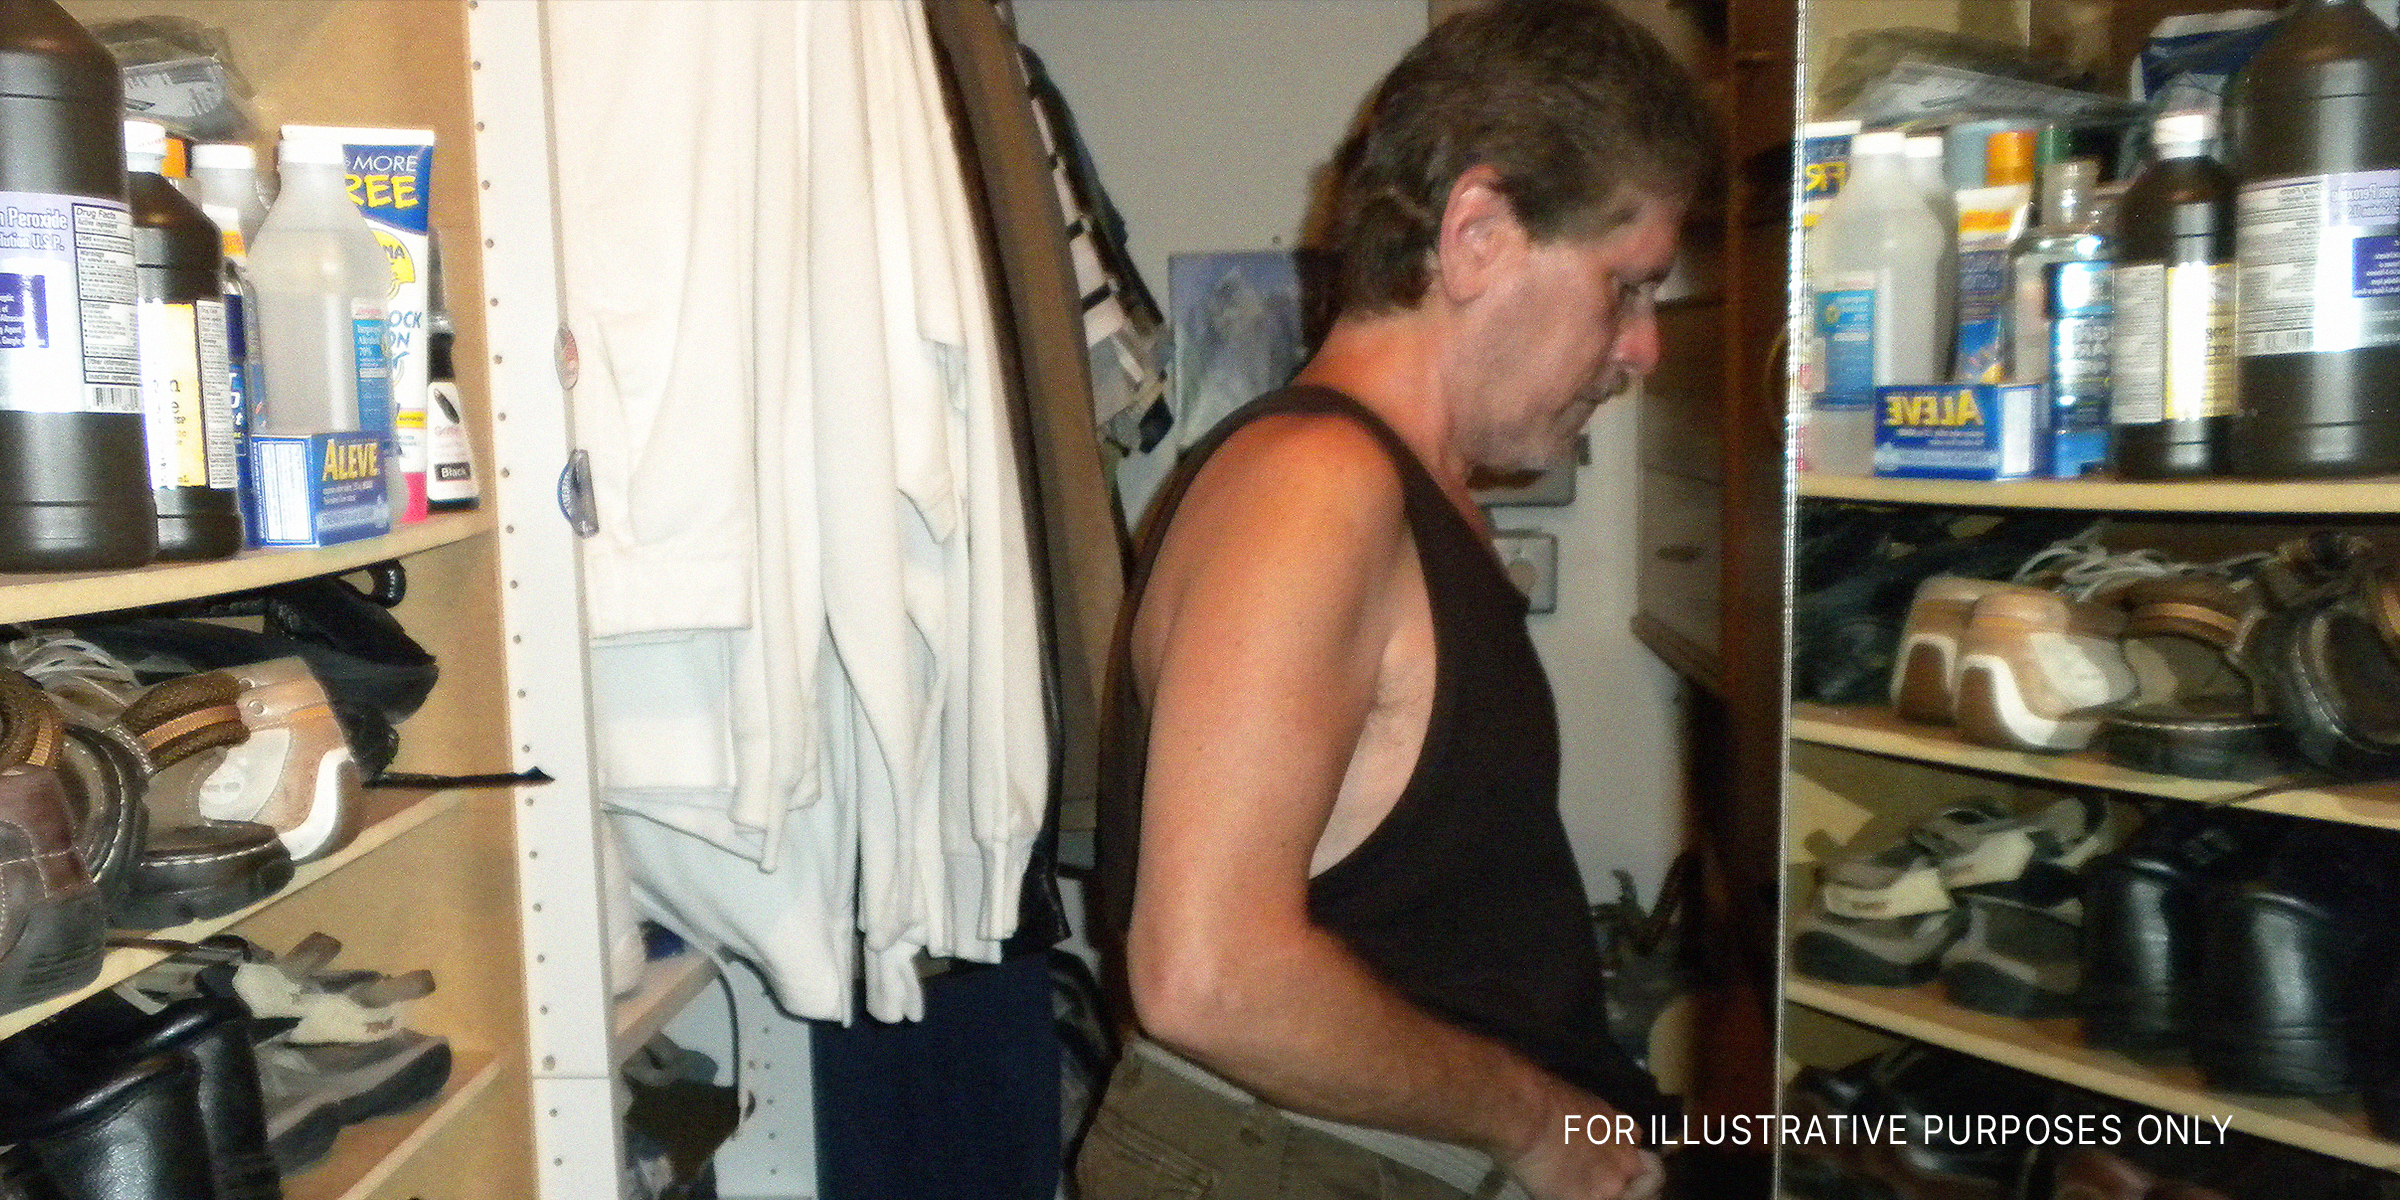 Ein Mann, der sich in einem Kleiderschrank anzieht | Quelle: Flickr